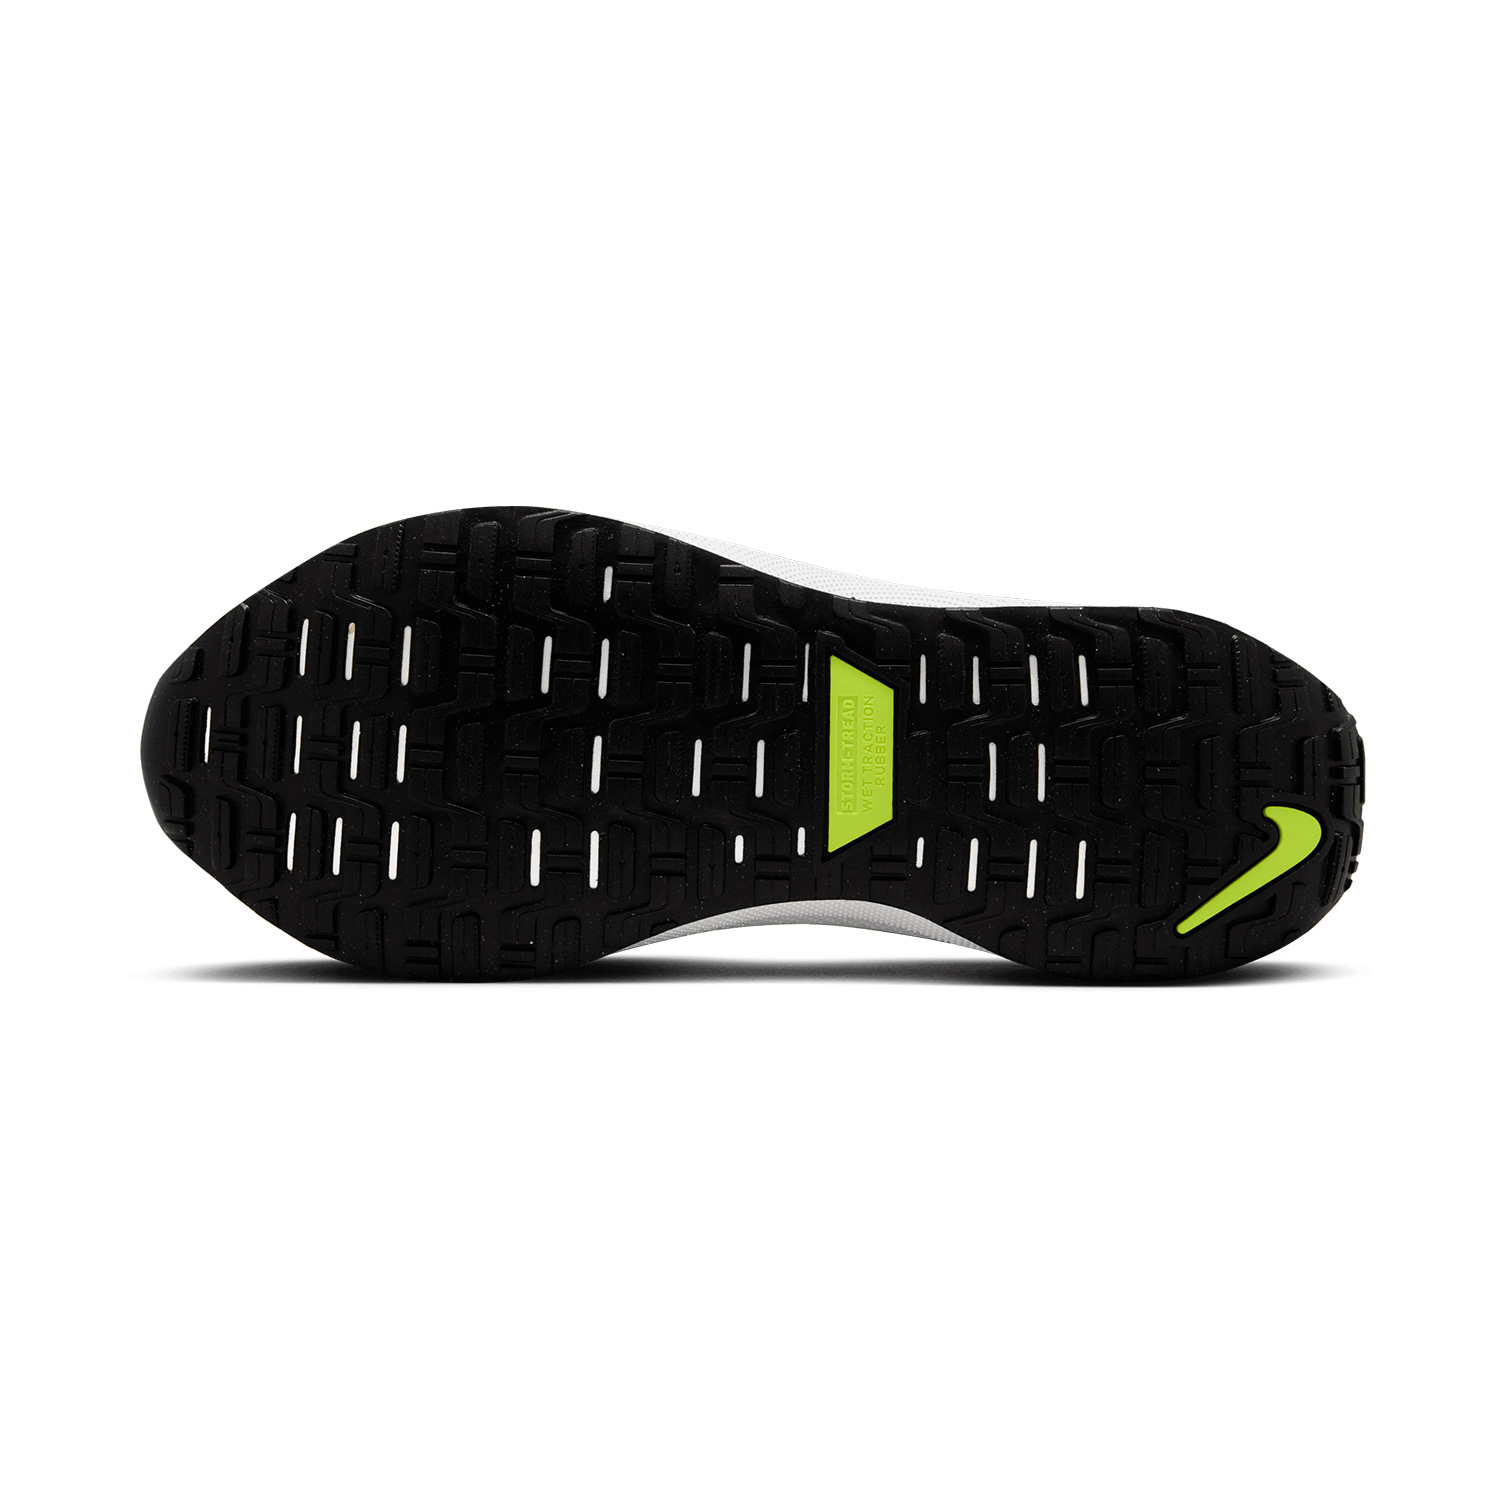 Nike InfinityRN 4 GTX Men's Running Shoes - Black/White